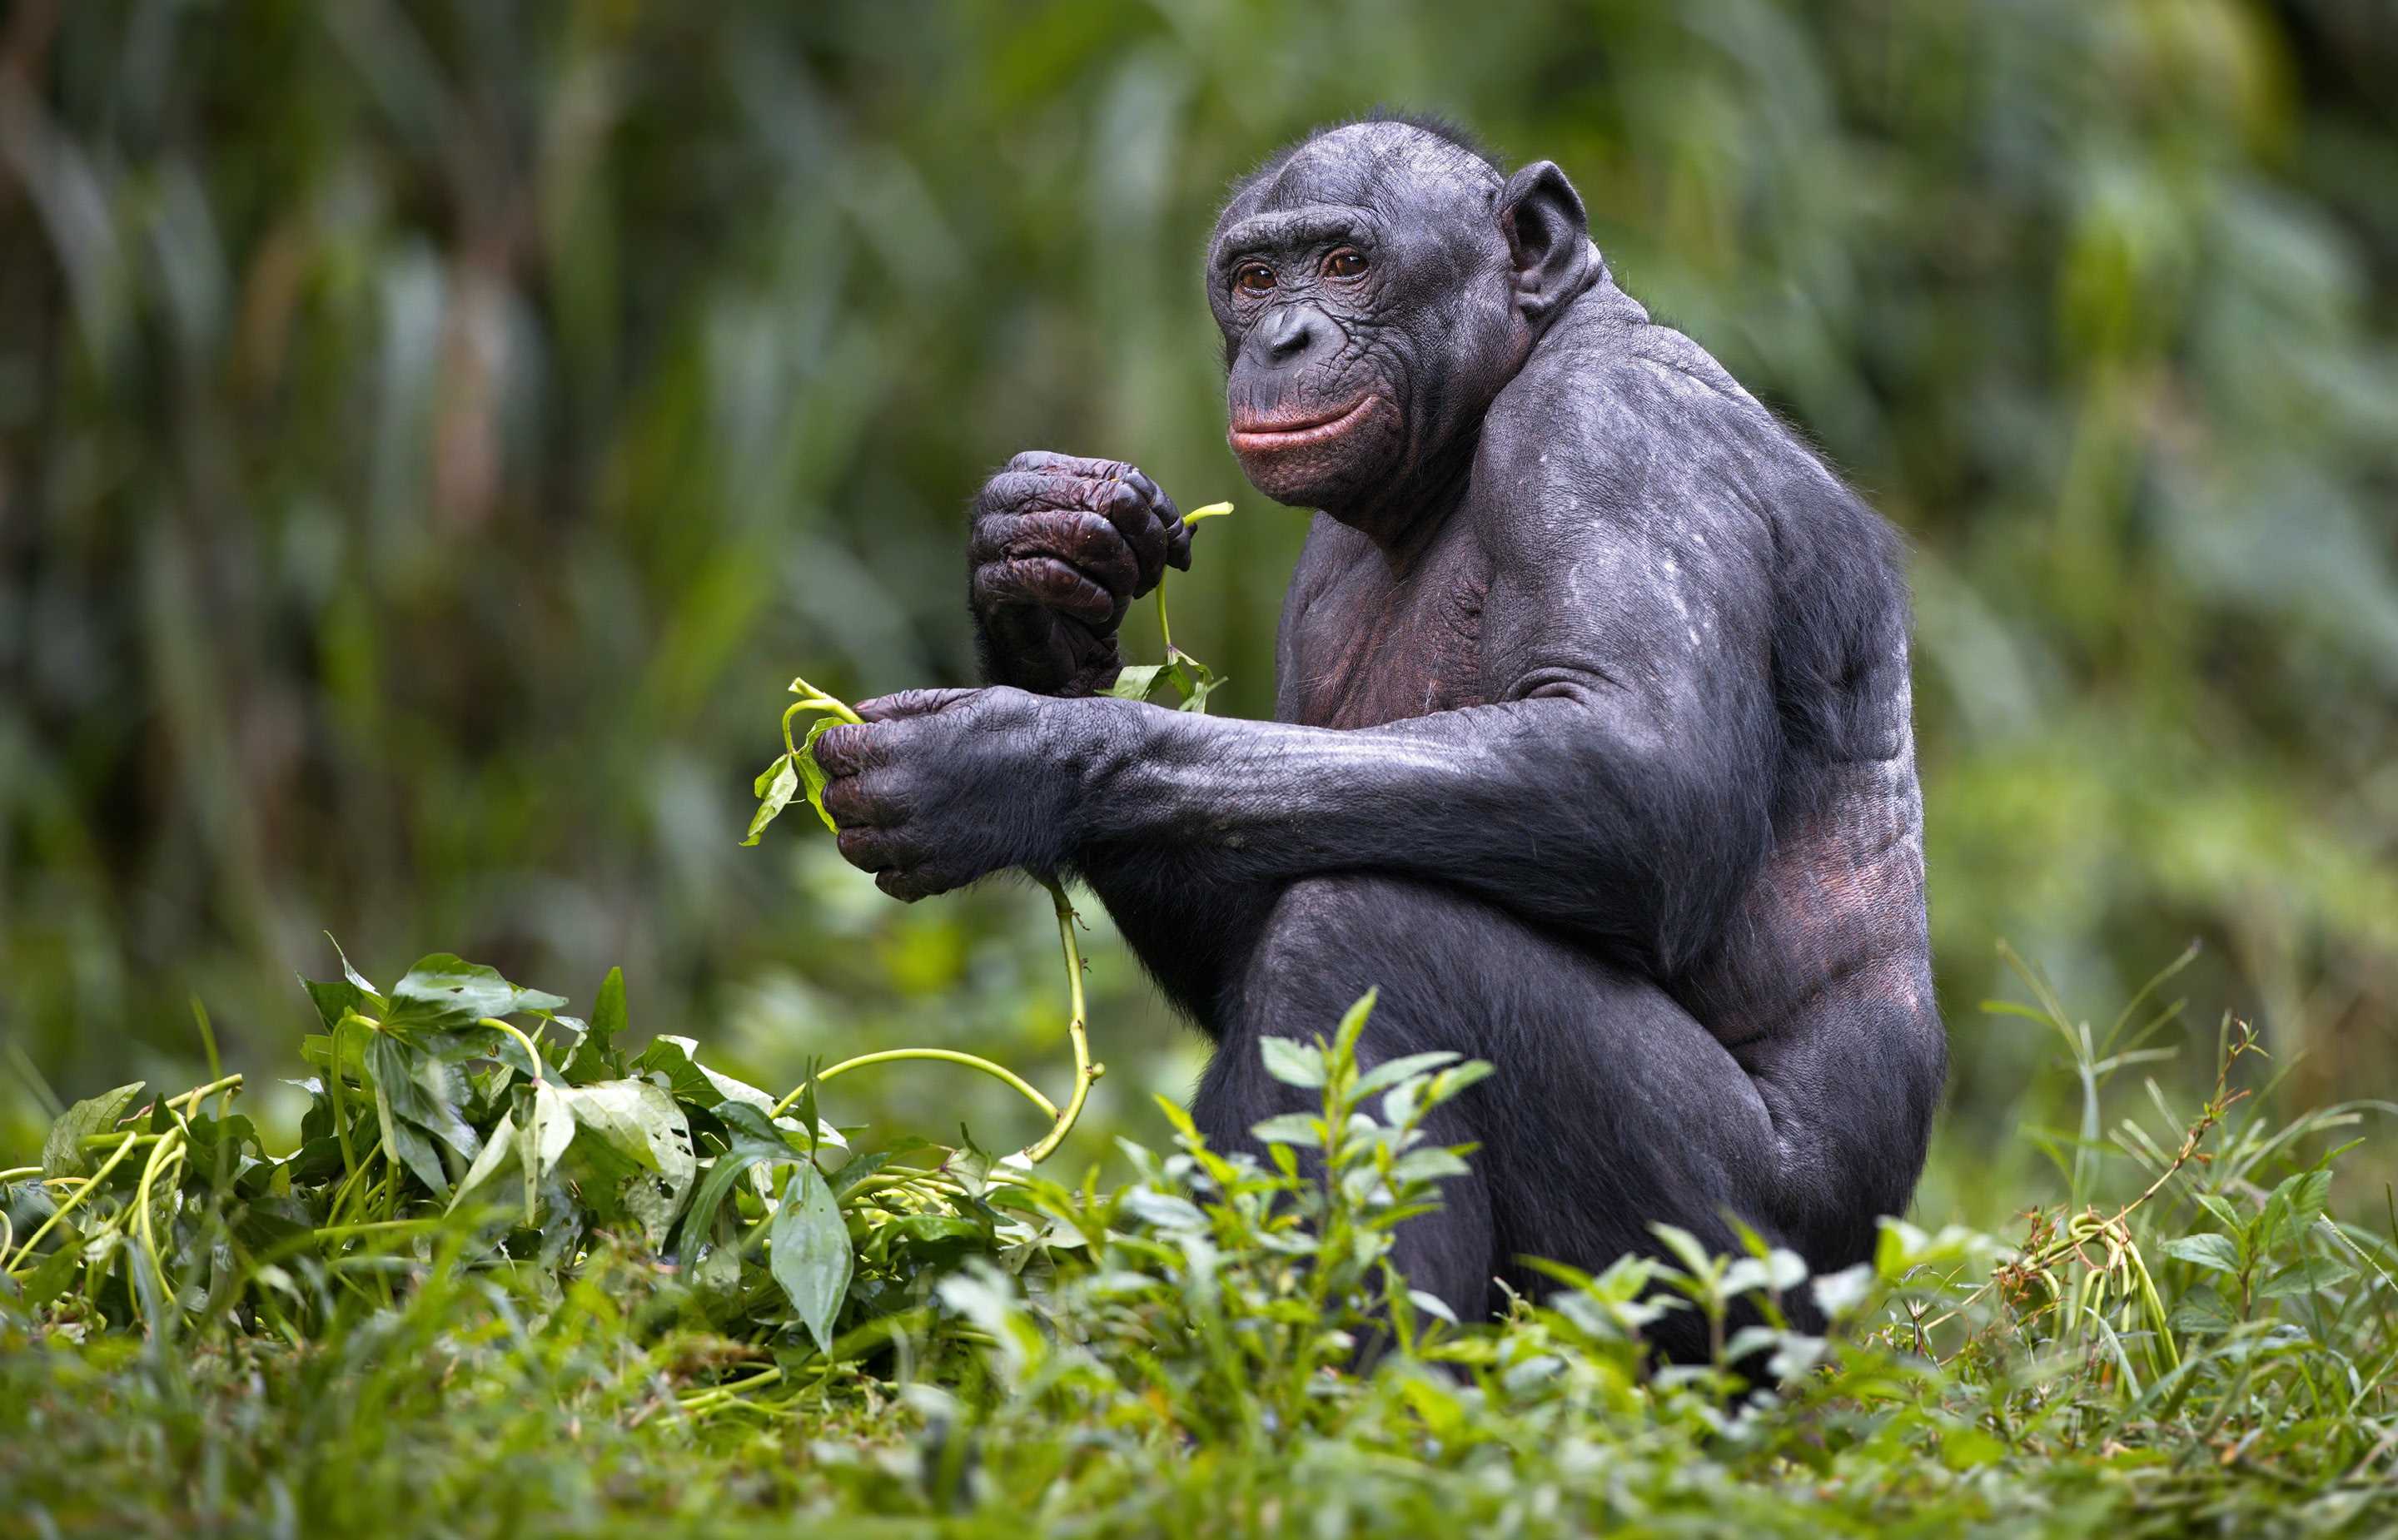 Image of squatting bonobo eating